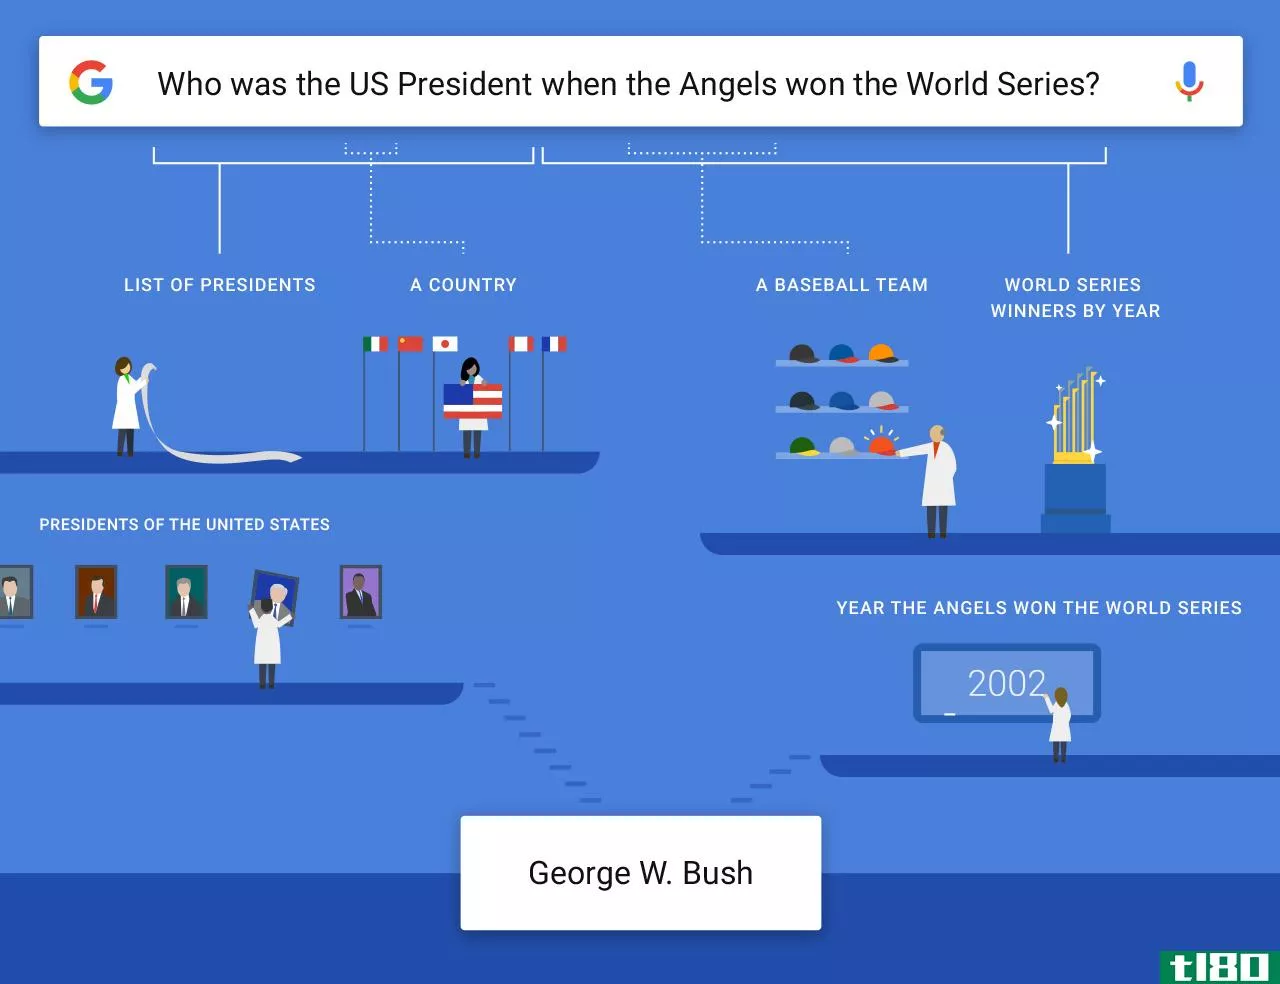 谷歌在回答你的复杂问题方面越来越聪明了